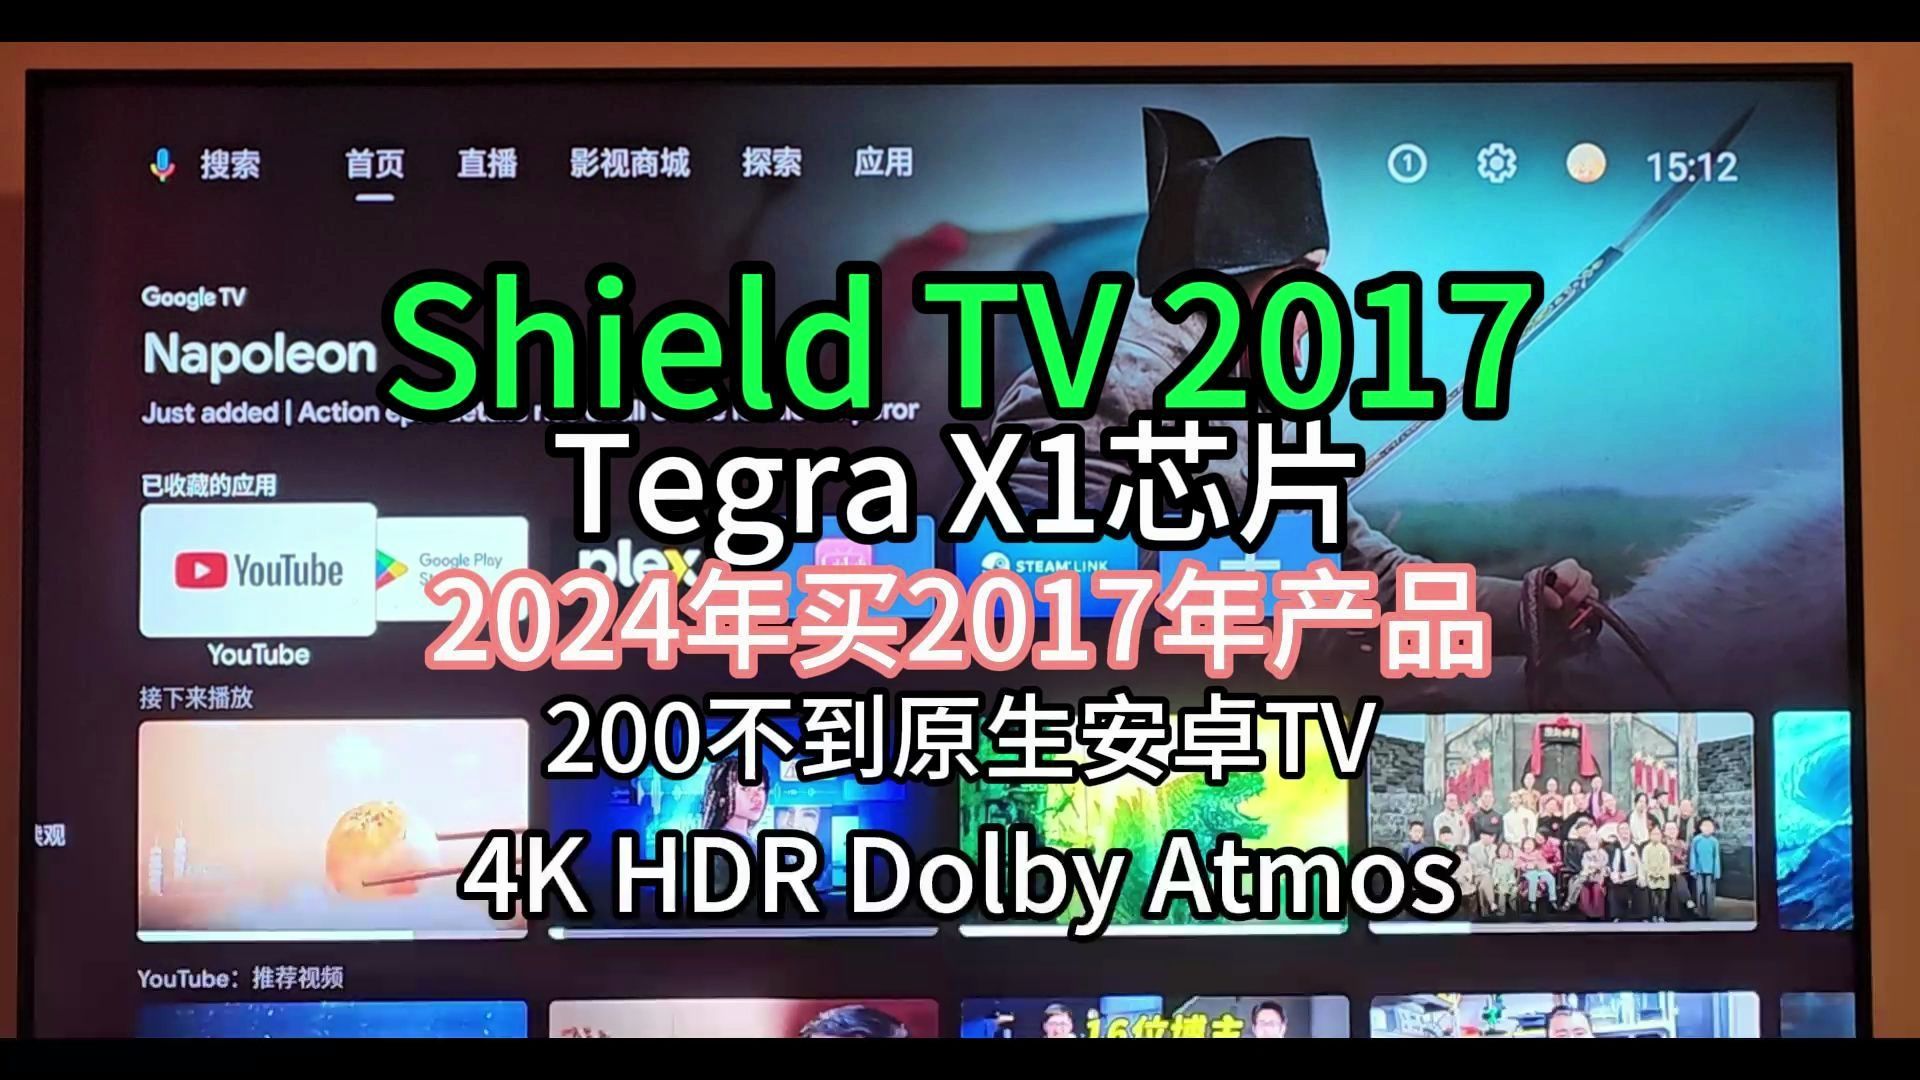 200元不到,原生安卓TV,Tegra X1芯片,神盾TV 2017